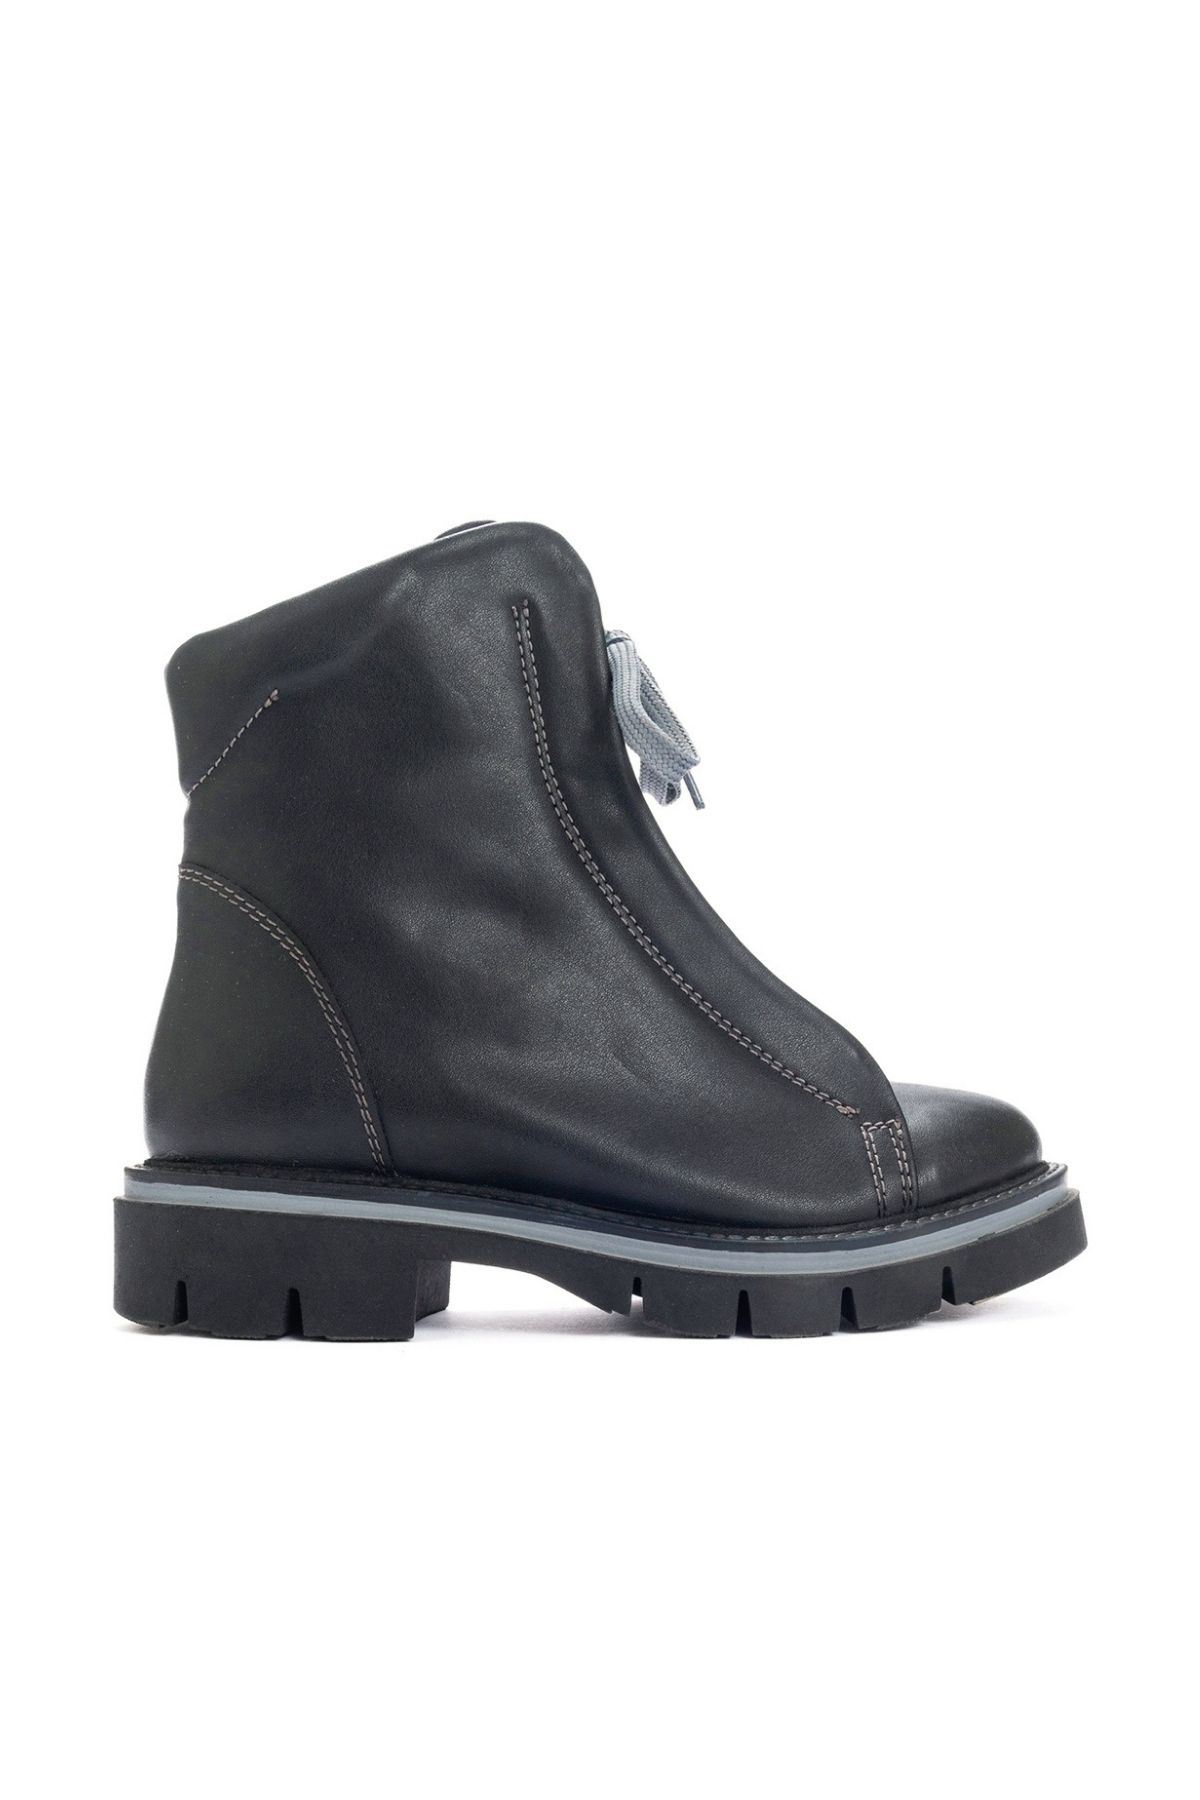 Fermuarlı kışlık kadın bot kaydırmaz taban sıcak tutan bağcıklı ayakkabı | Gate Shoes-Siyah